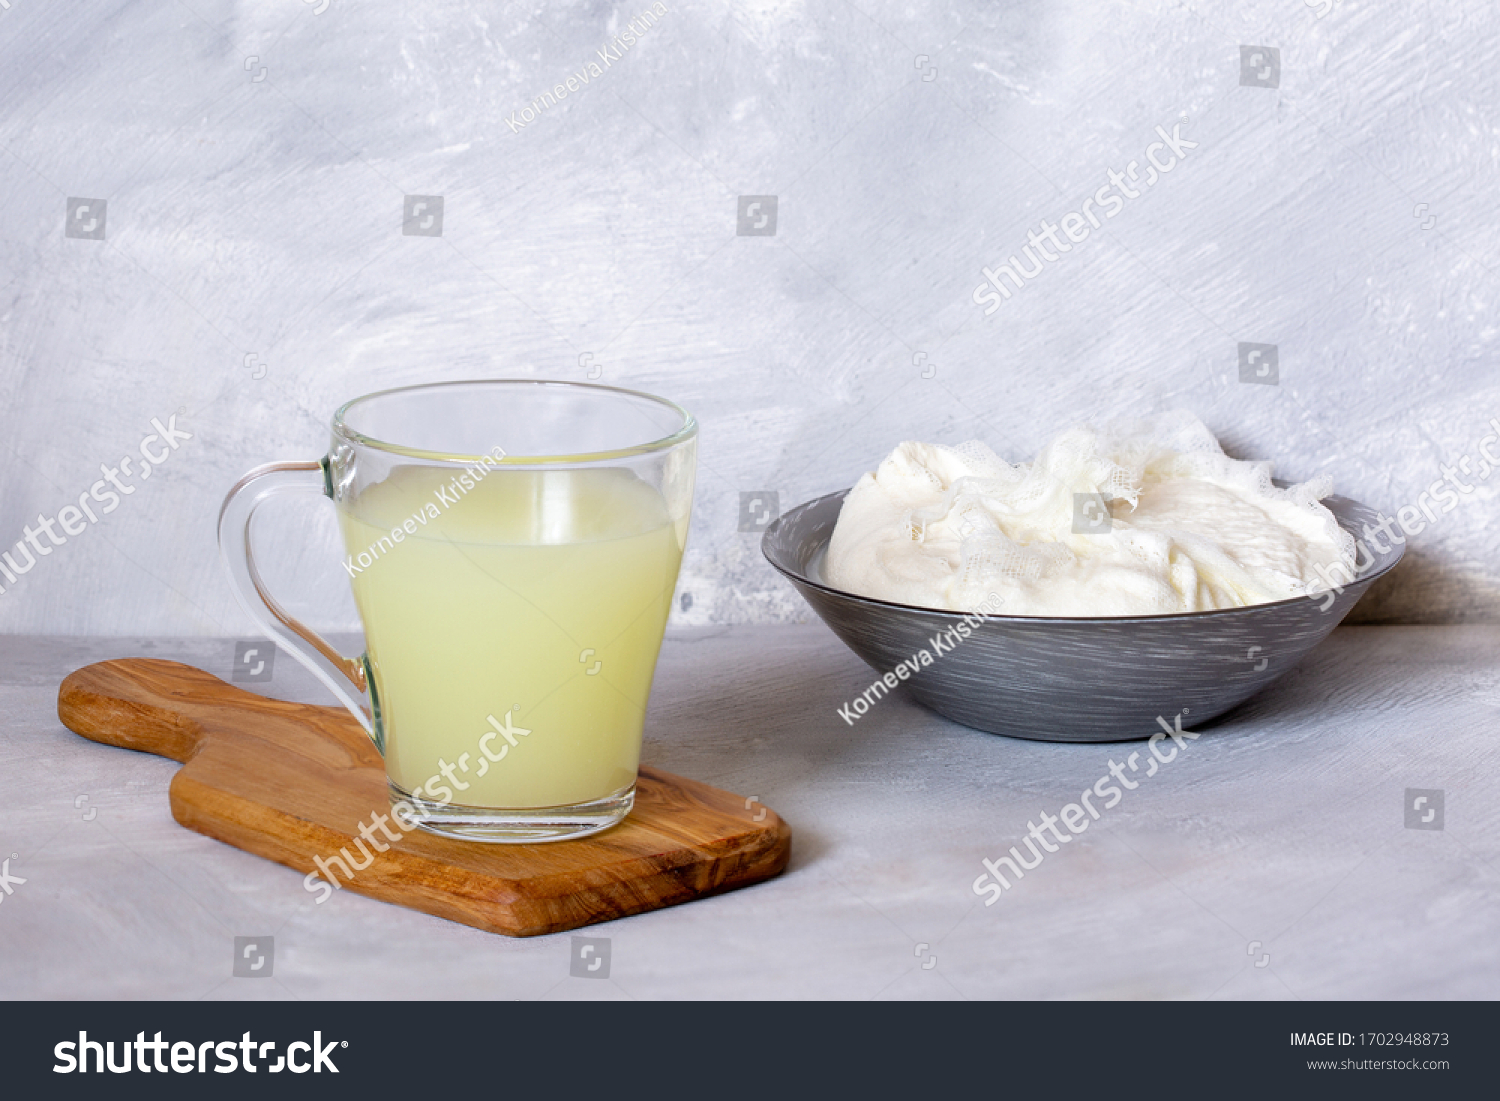 Картинки сыворотка из молока Крымская